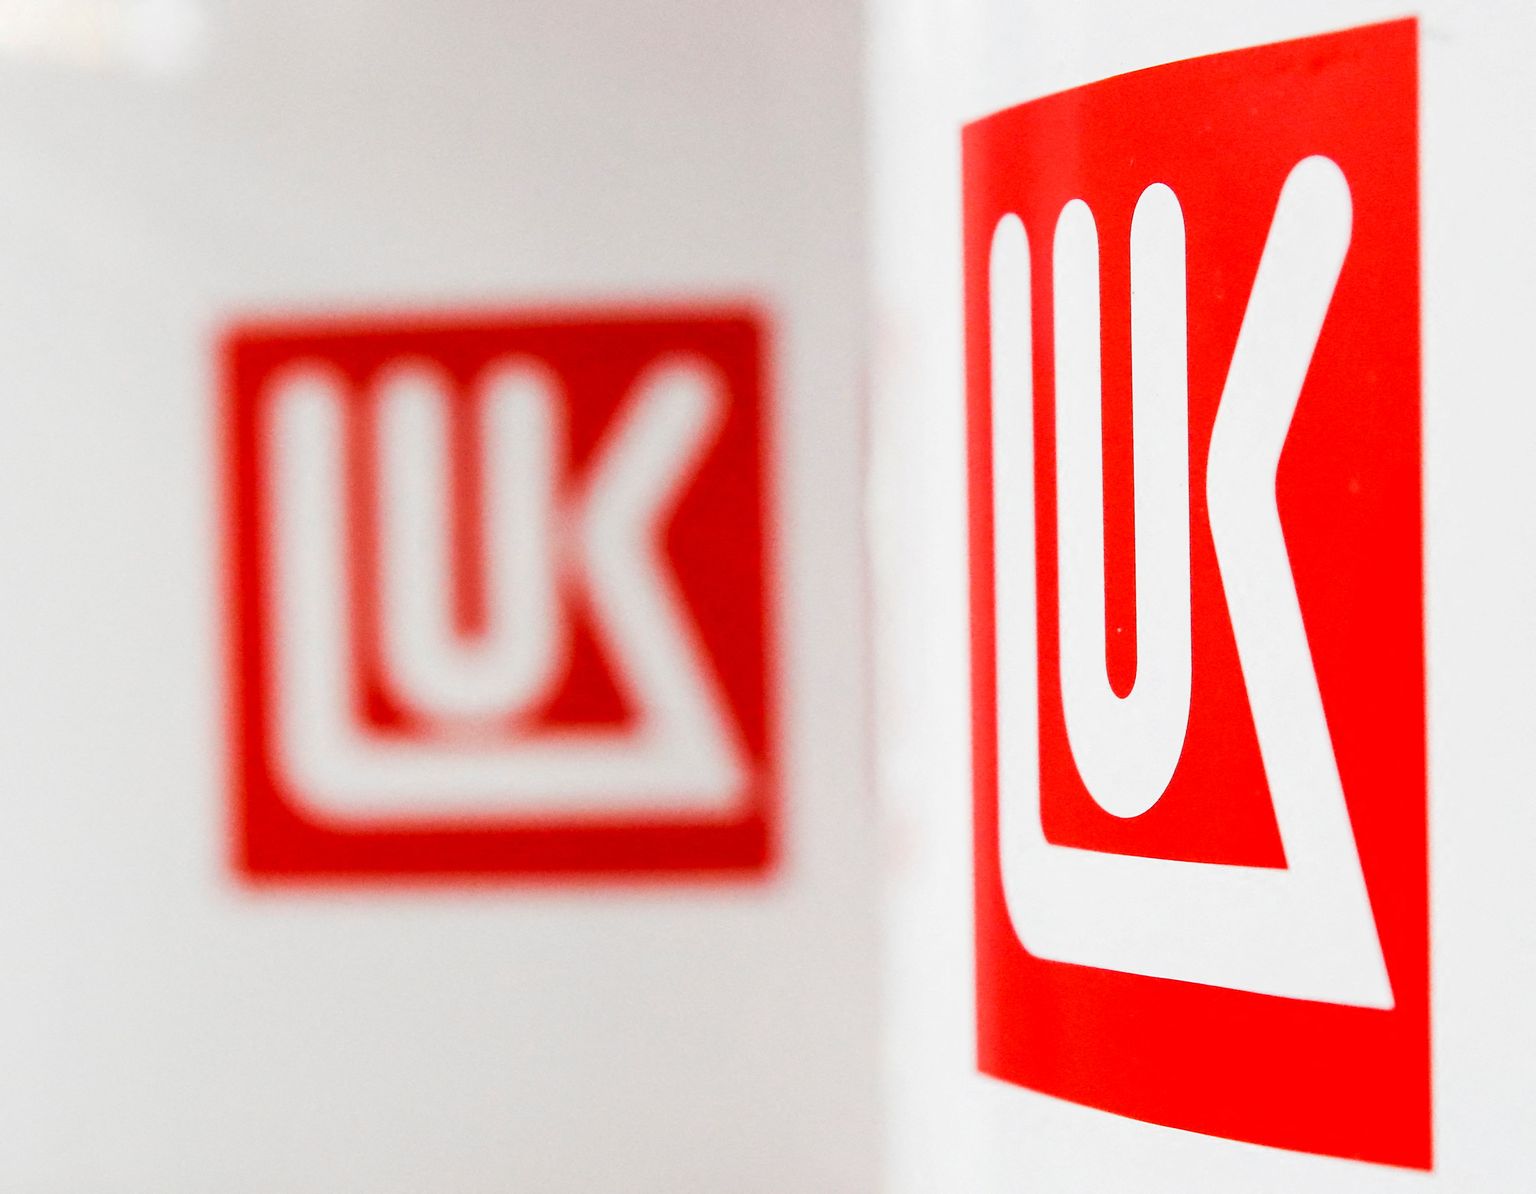 Lukoil kuulus nende ettevõtete hulka, mille aktsiatega kauplemine peatati Londoni börsil viivitamatult.